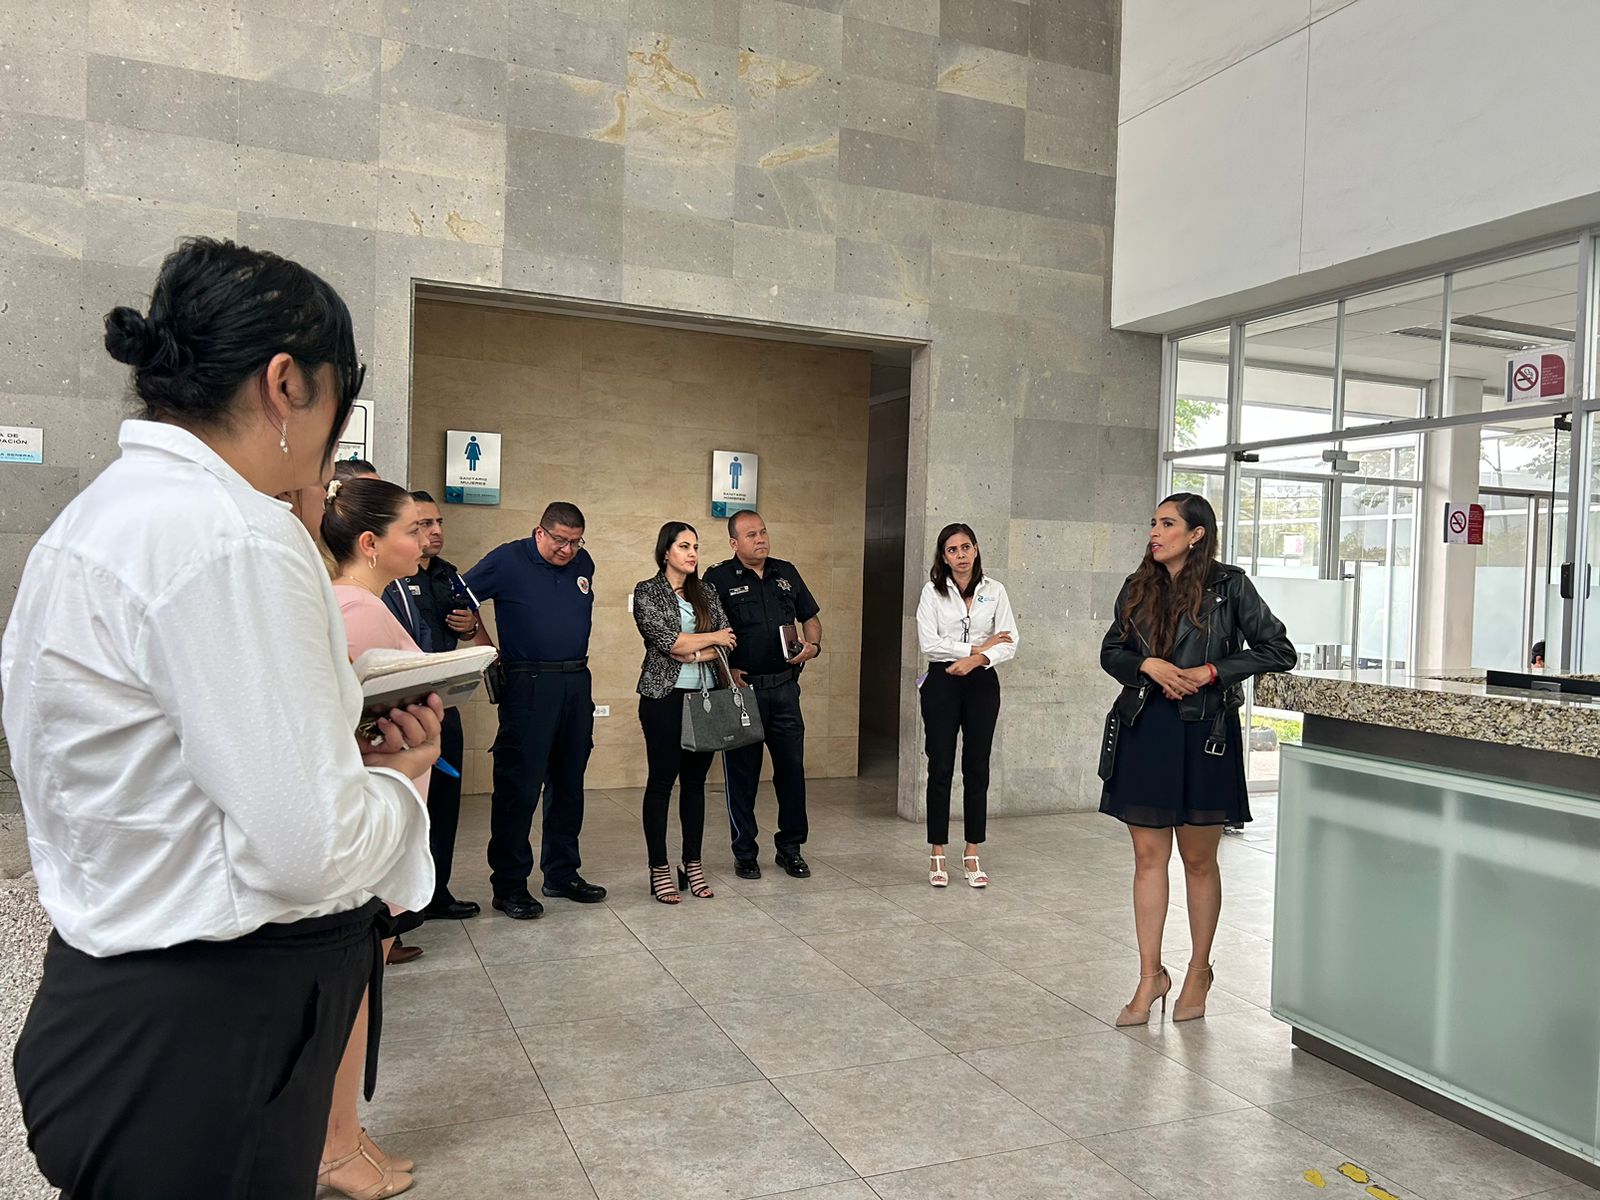 Mesas Regionales de Seguridad y Paz llevaron a cabo un recorrido por las instalaciones del Centro de Justicia para Mujeres